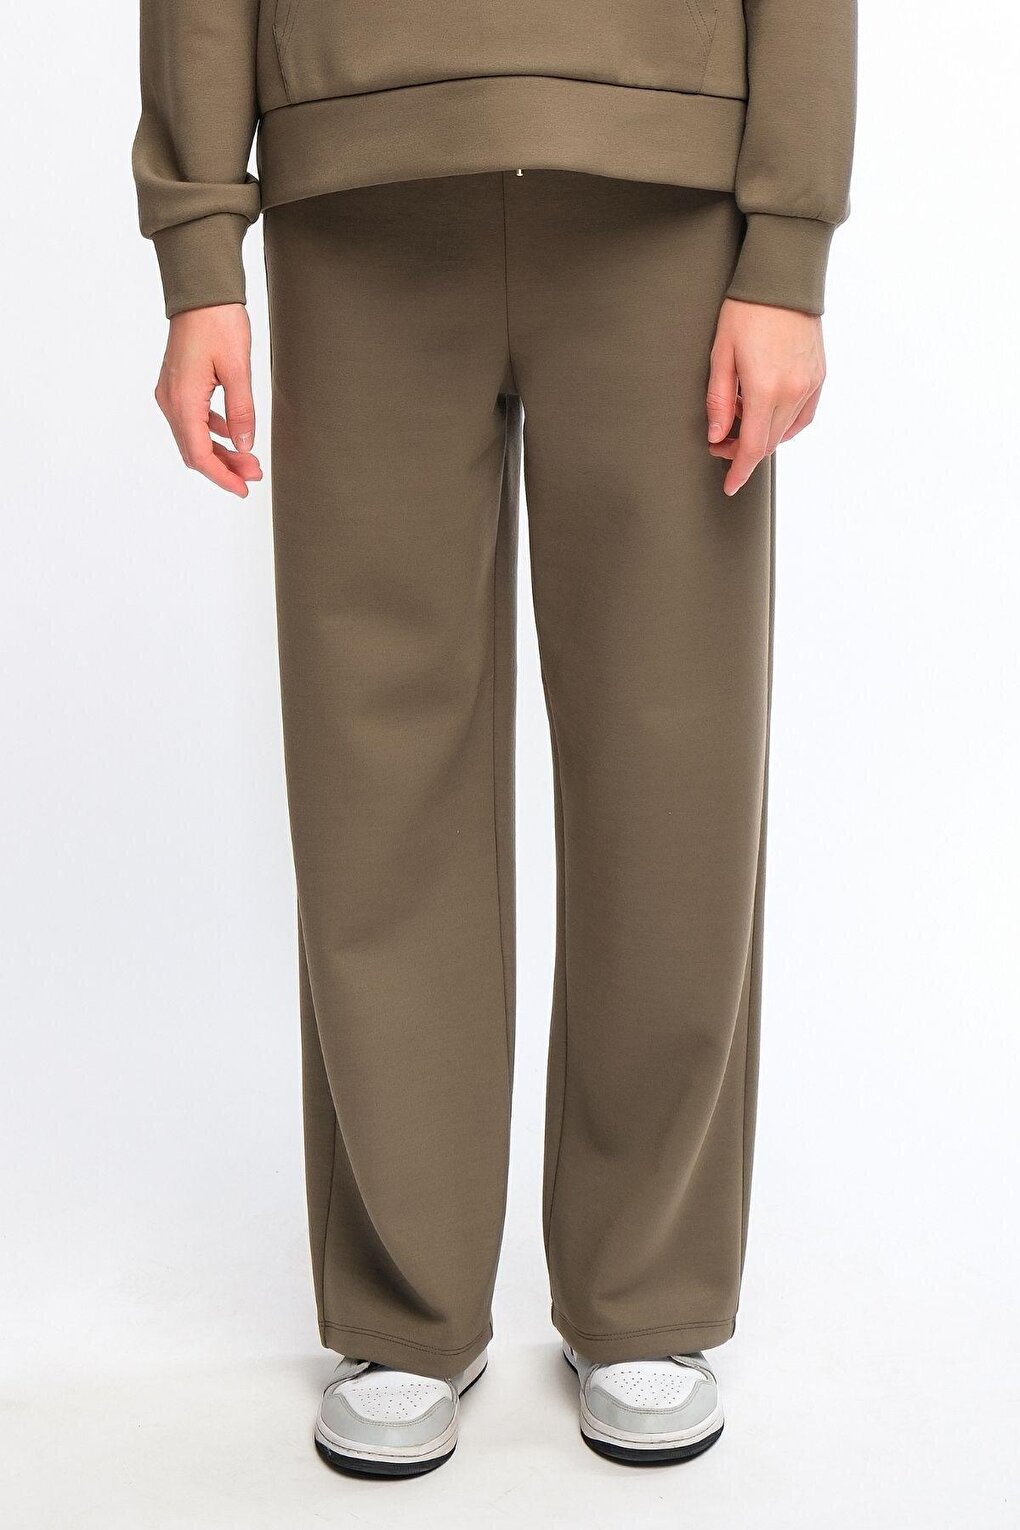 цена Женские широкие спортивные штаны цвета хаки Широкие брюки Chandraswear